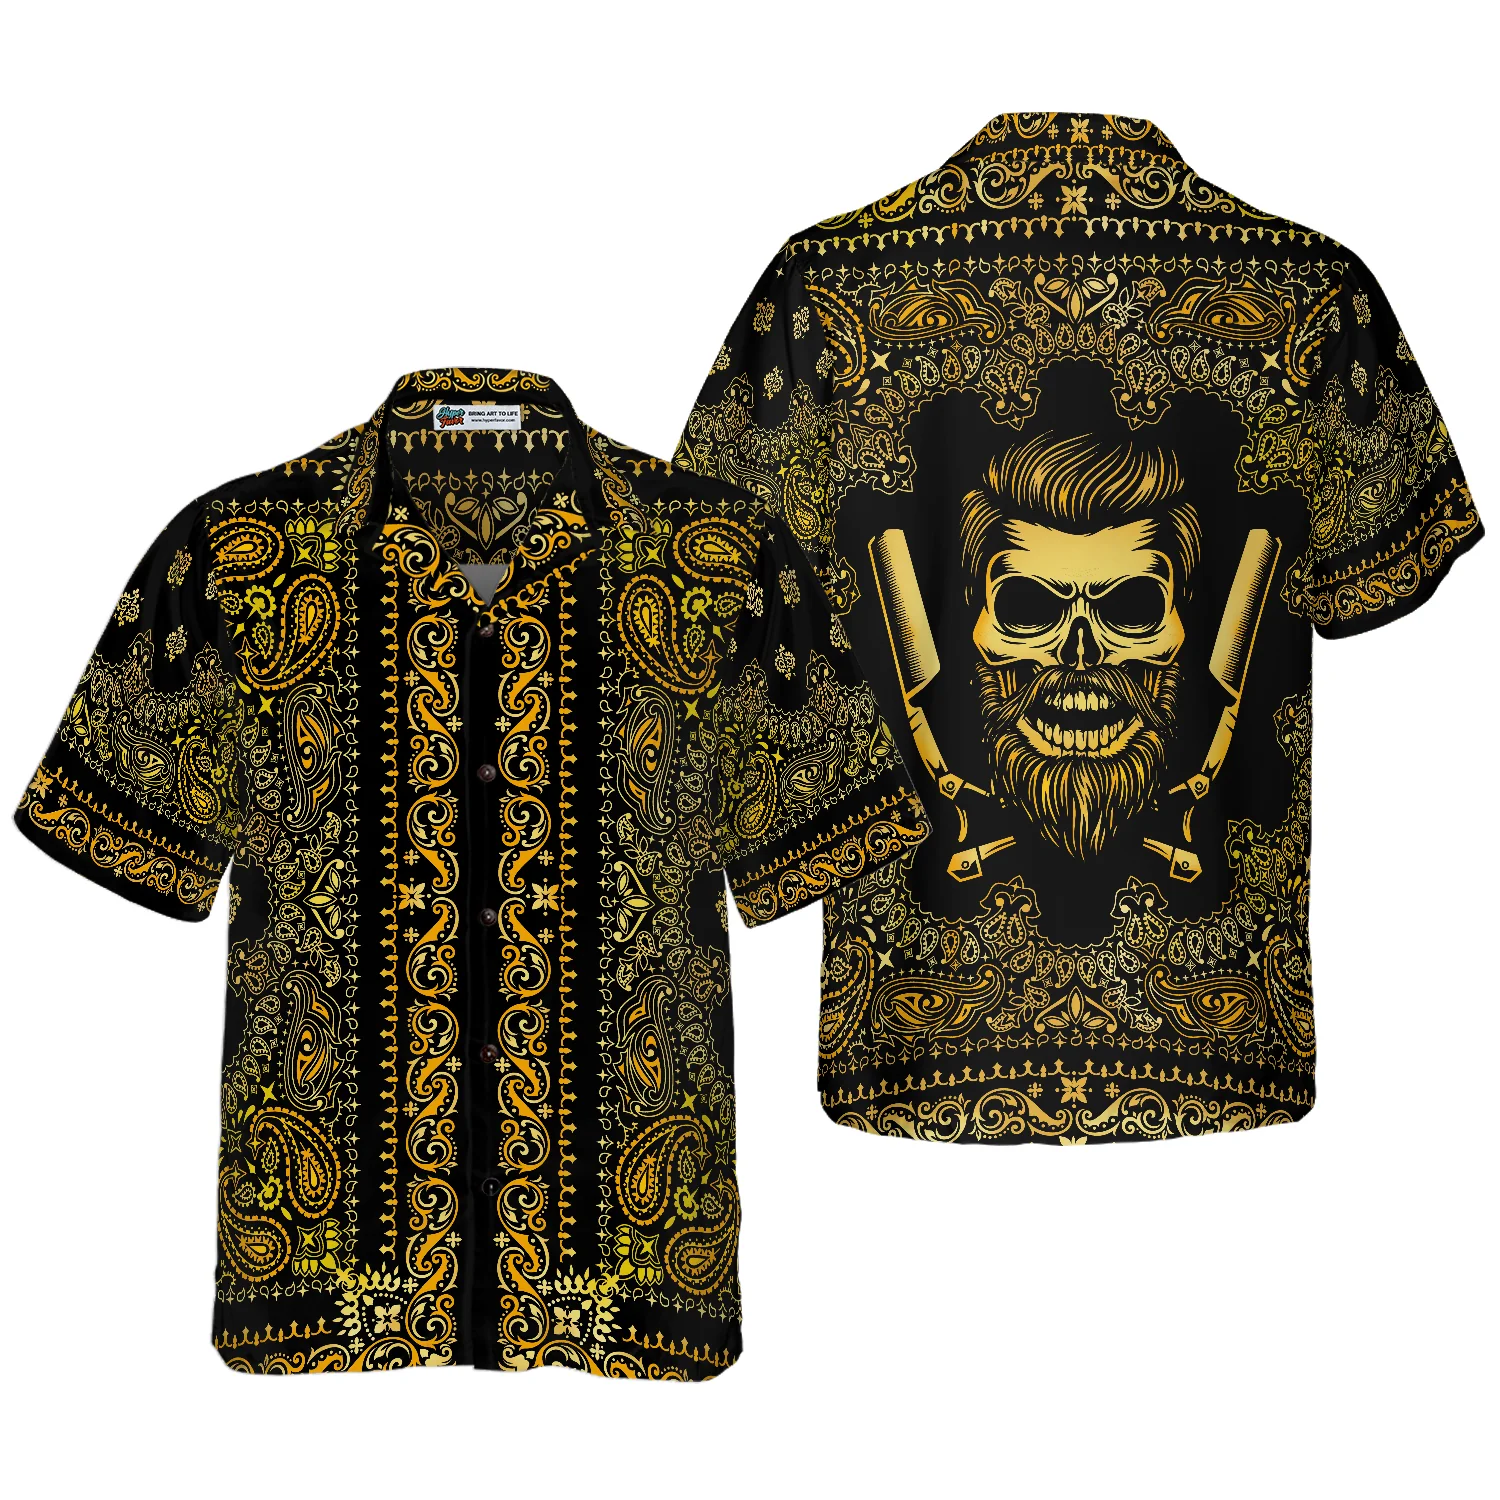 Barber Bandana Style Gold Hawaiian Shirt Aloha Shirt For Men and Women